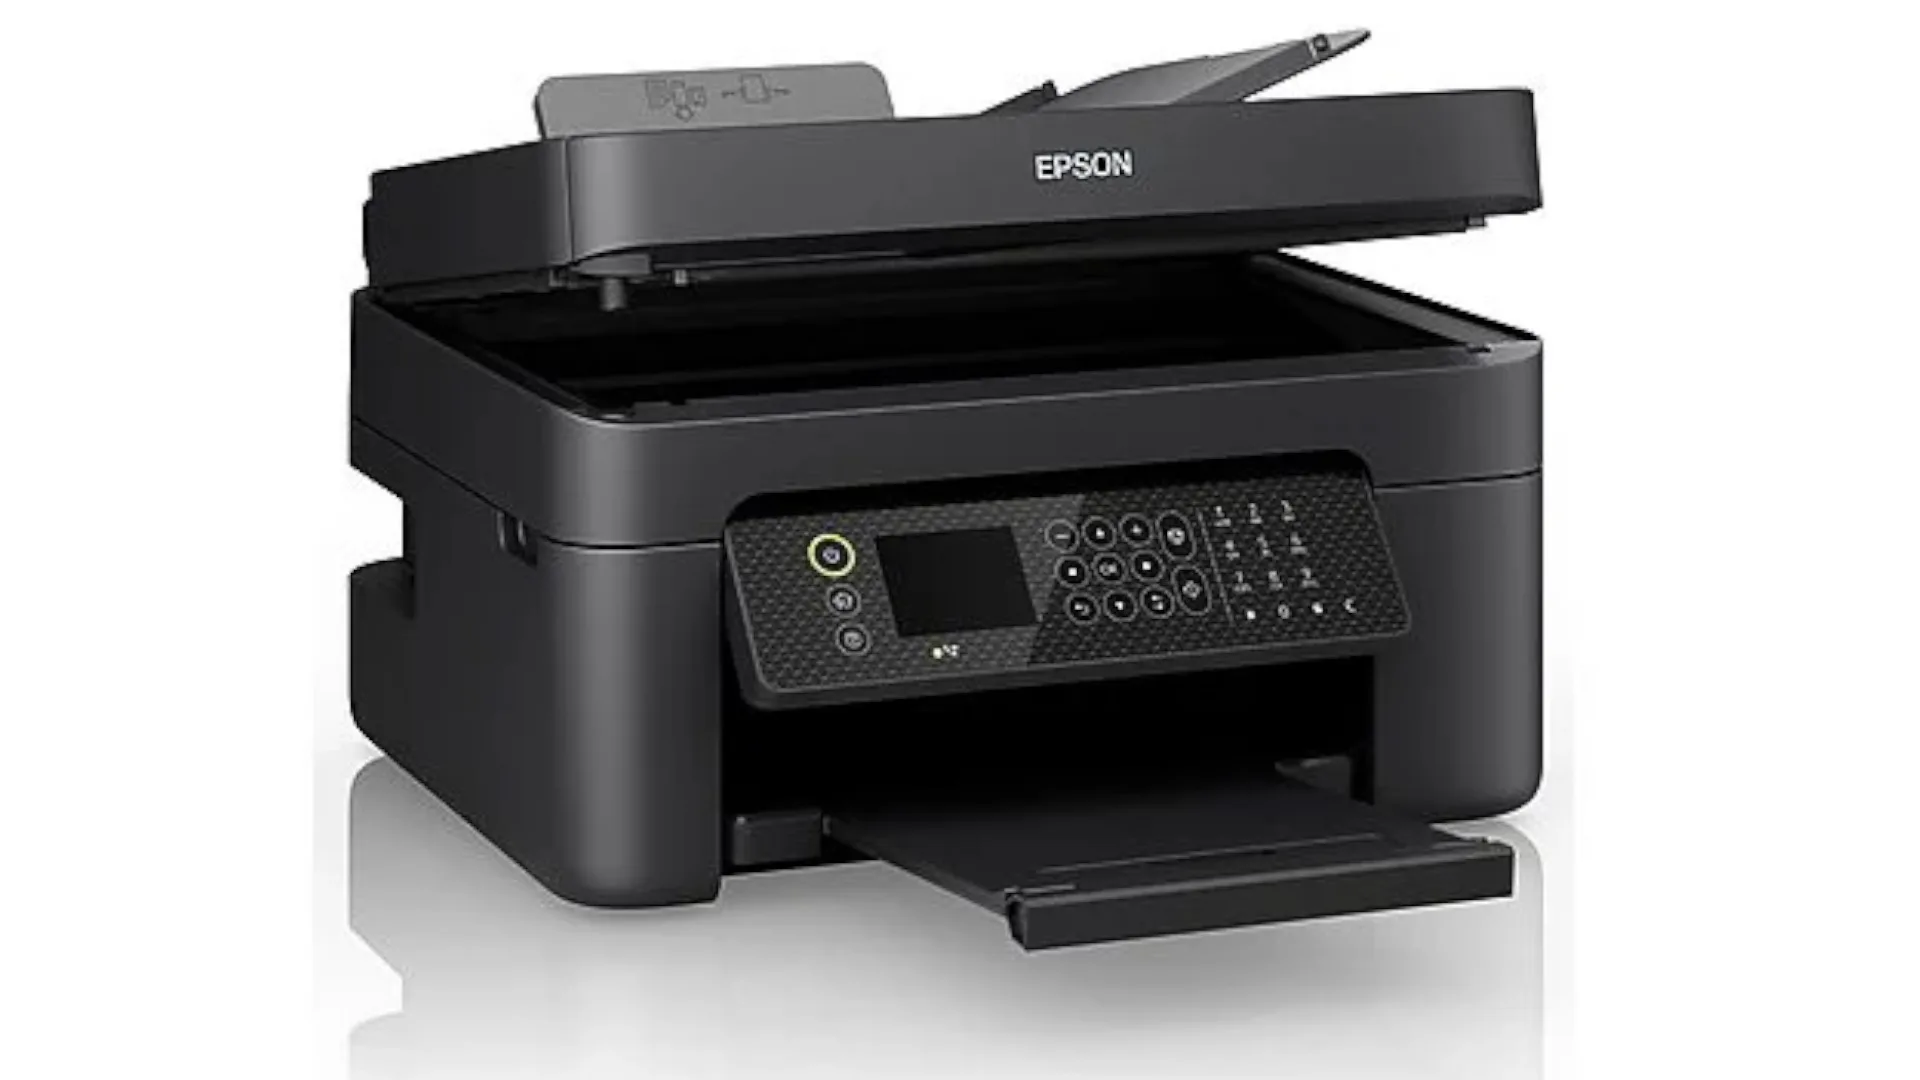 4-in-1 printer